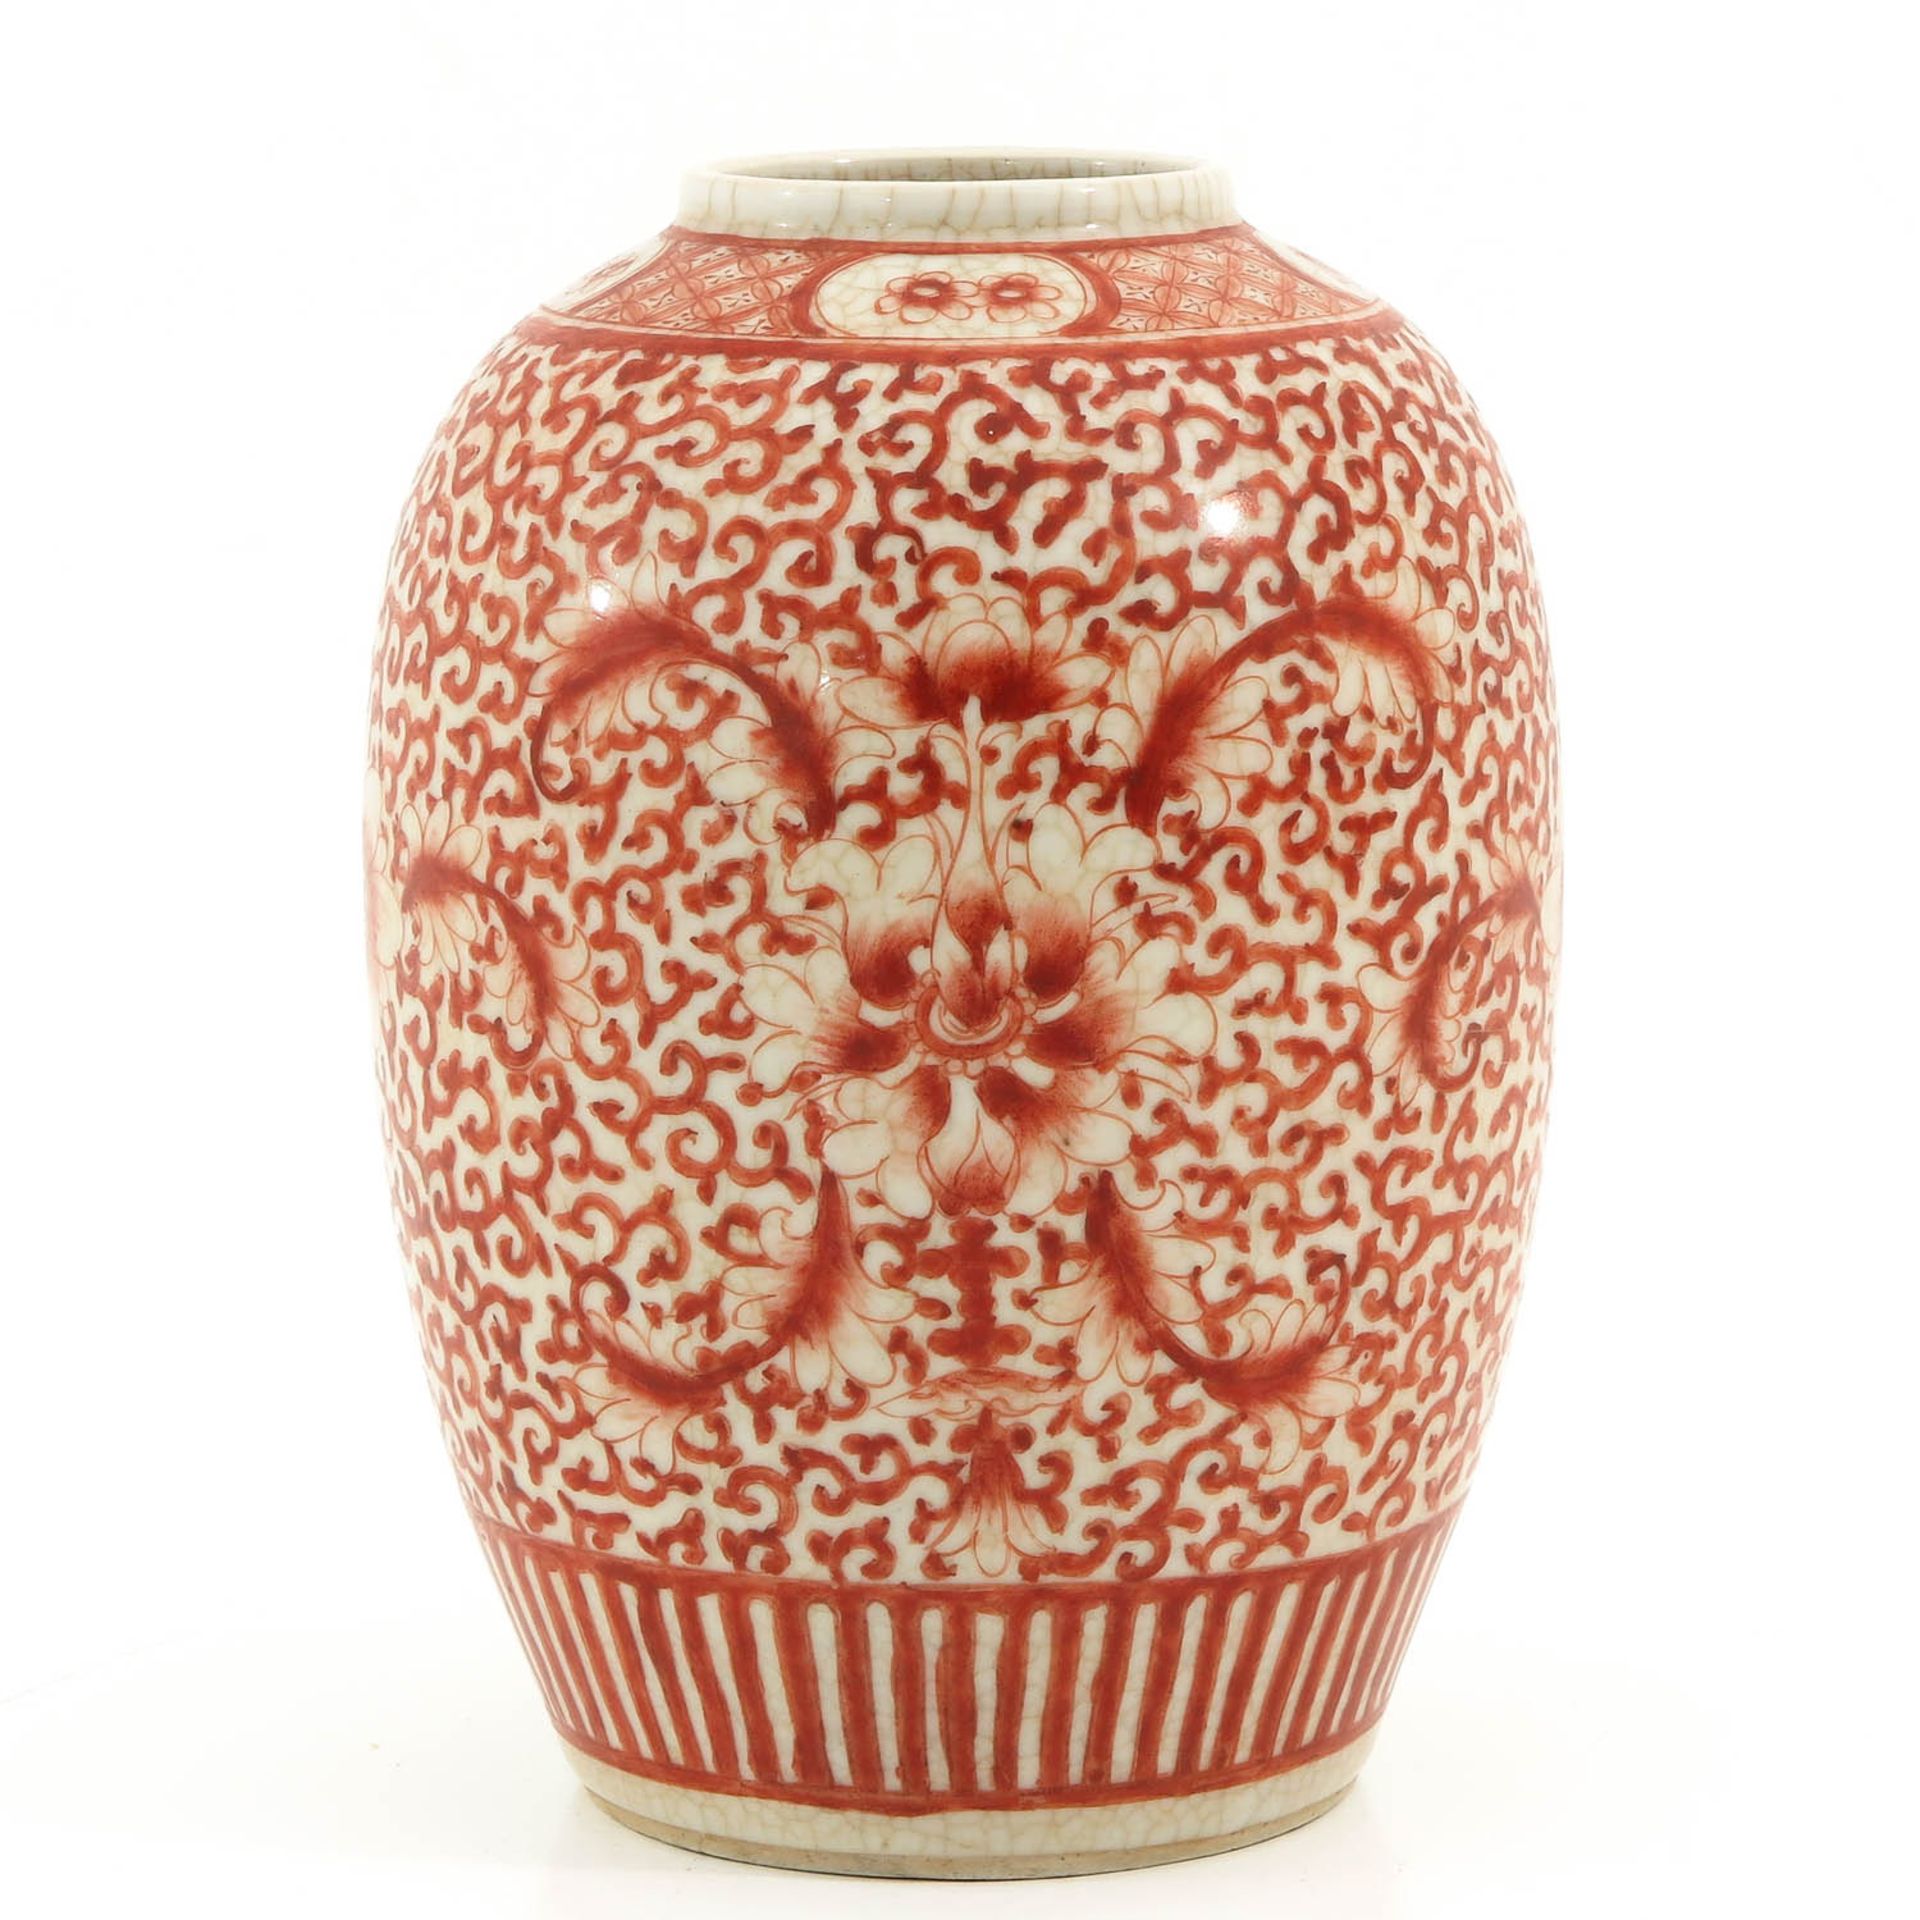 A Red Floral Decor Vase